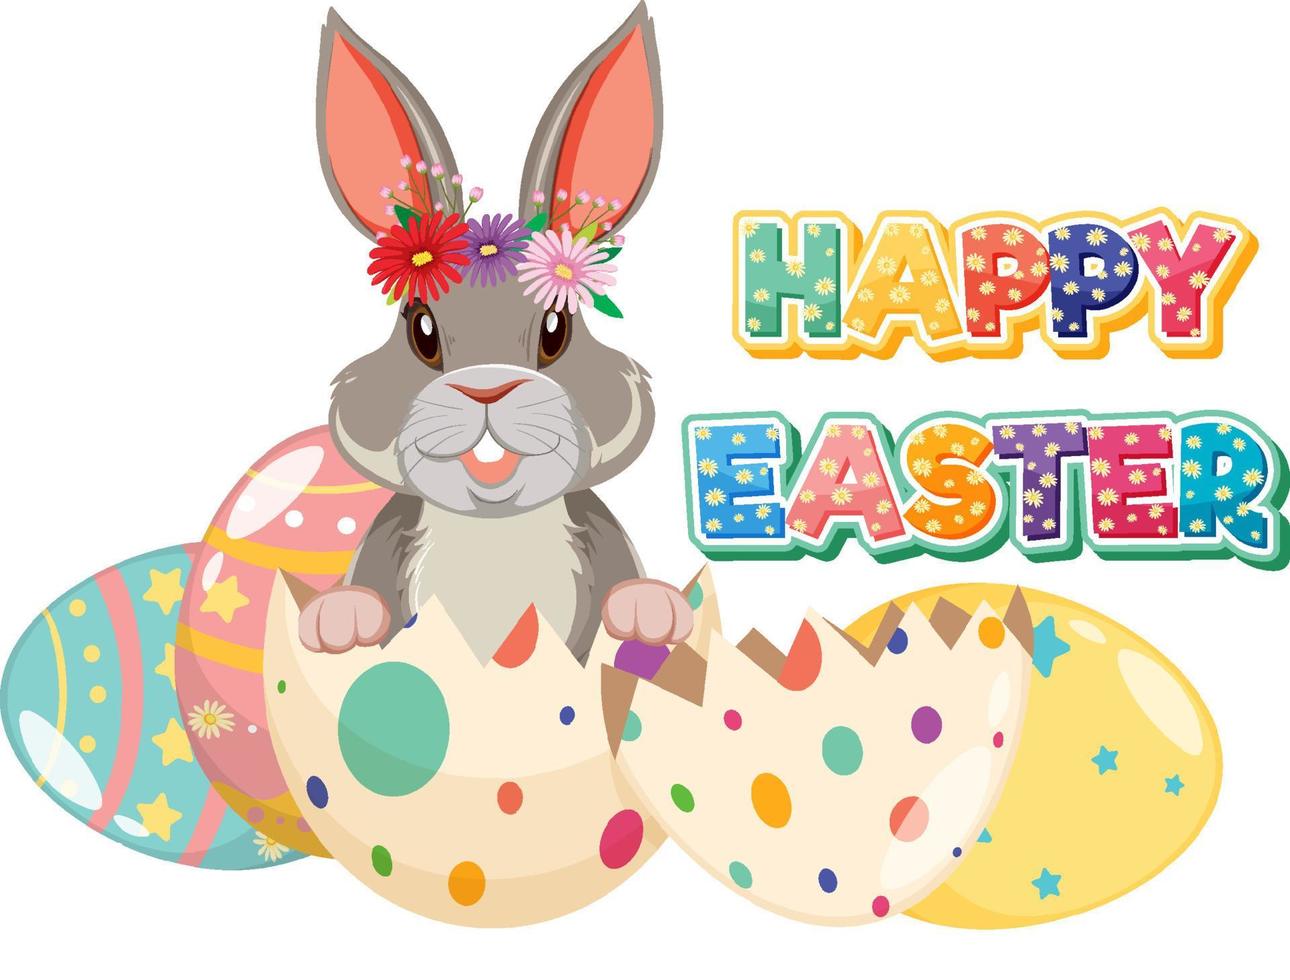 glad påsk design med kanin och ägg vektor